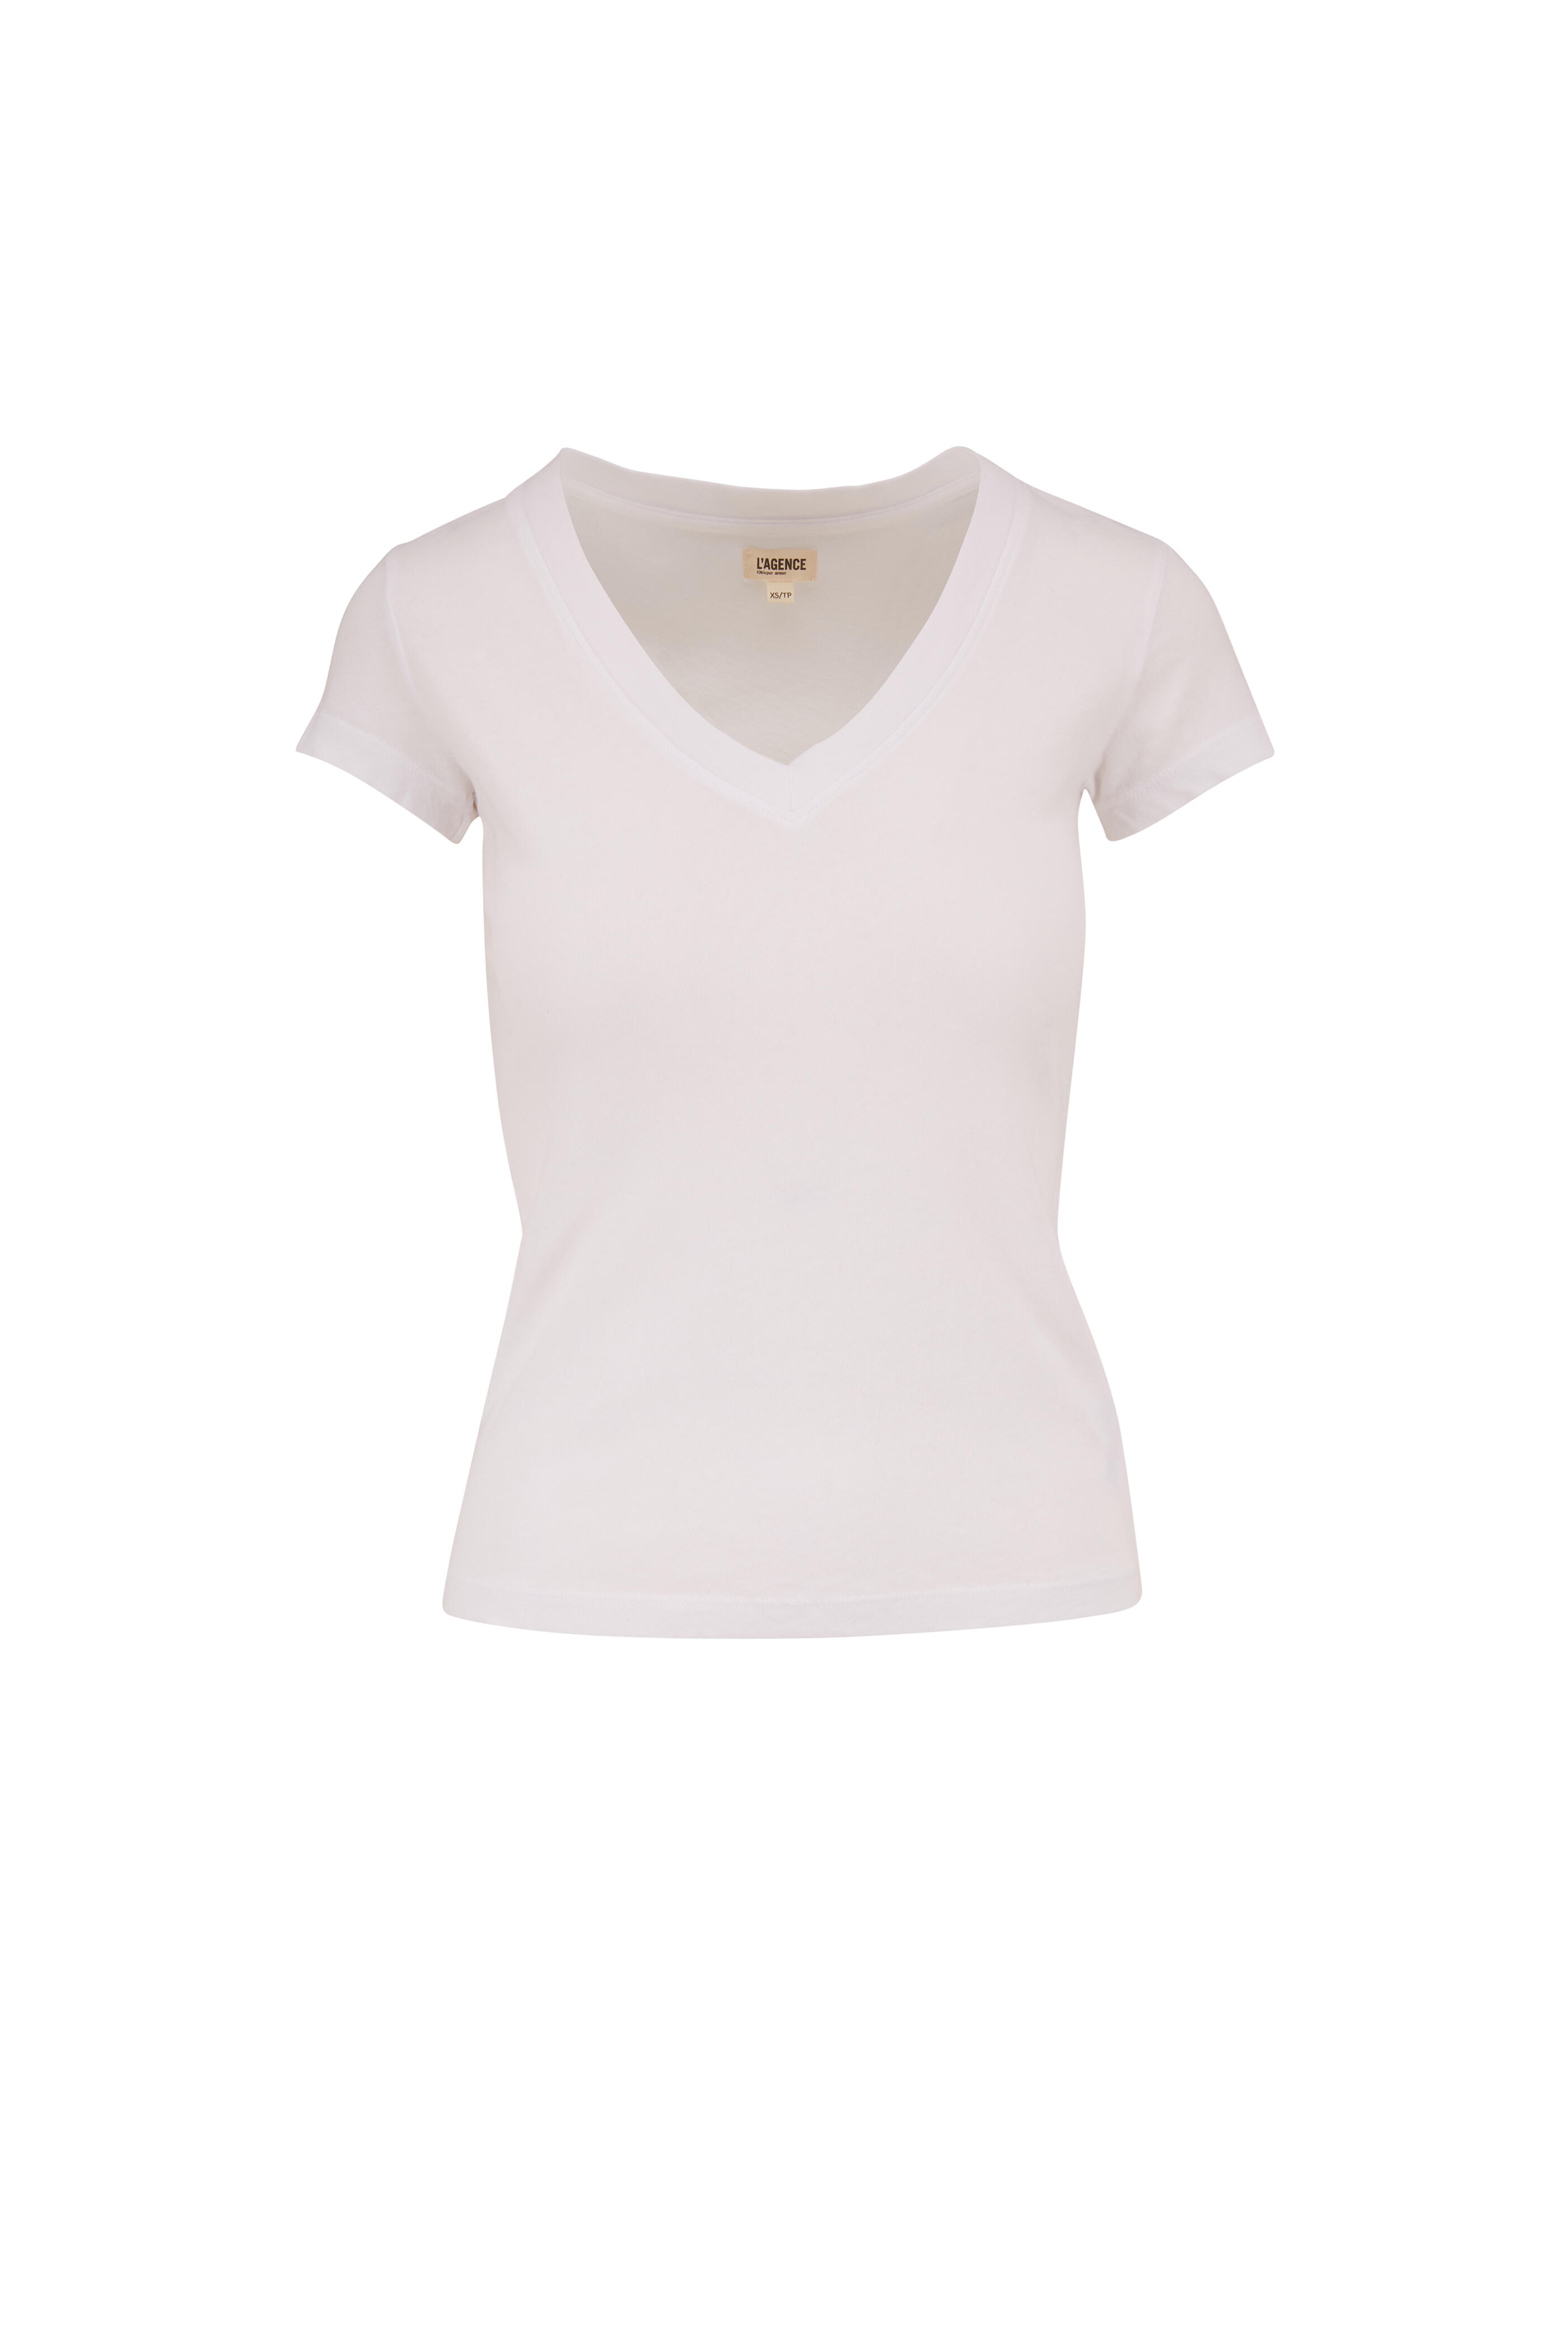 L'Agence - Becca White V-Neck T-Shirt | Mitchell Stores